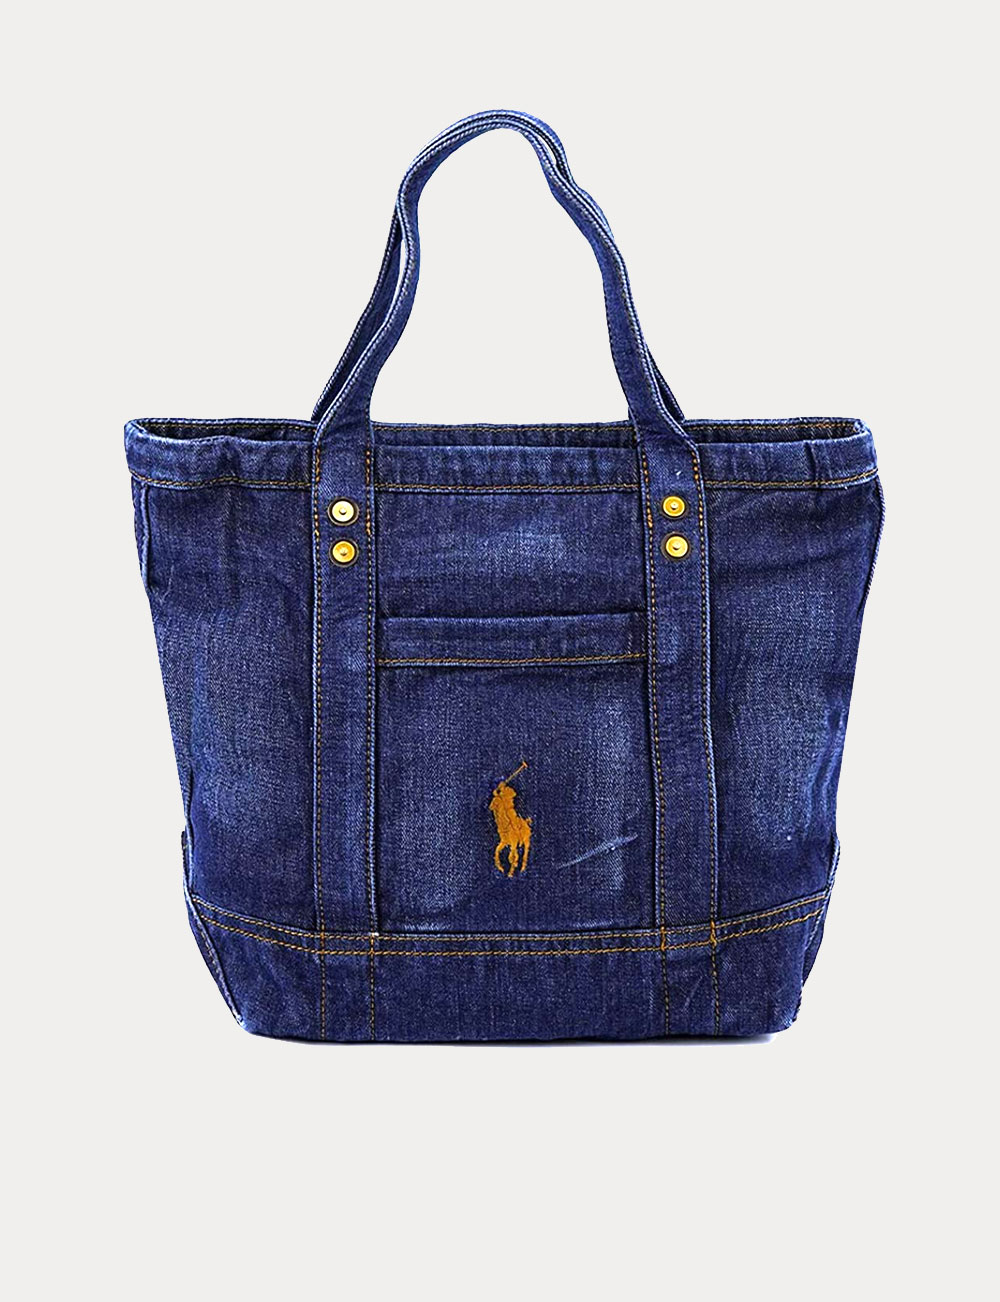 Accessoire en jean, le sac Ralph Lauren